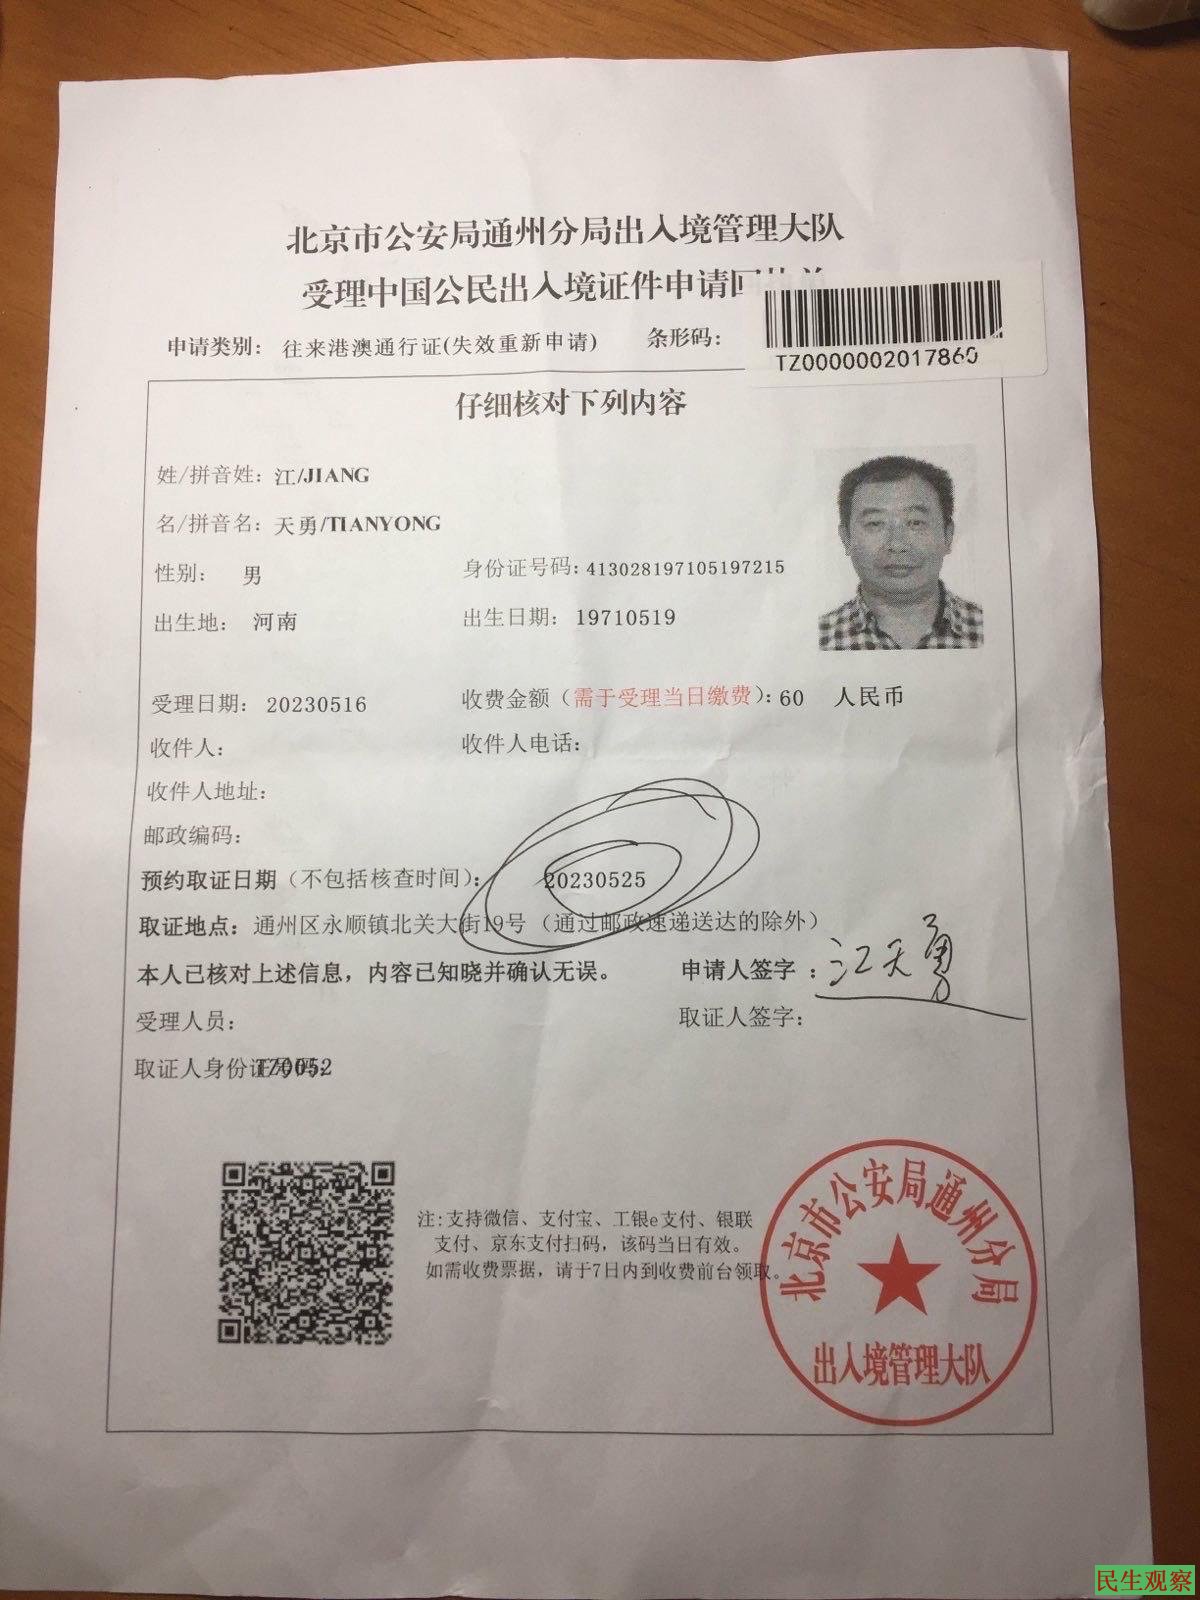 中共非法施暴专栏：江天勇被边控无法办理护照